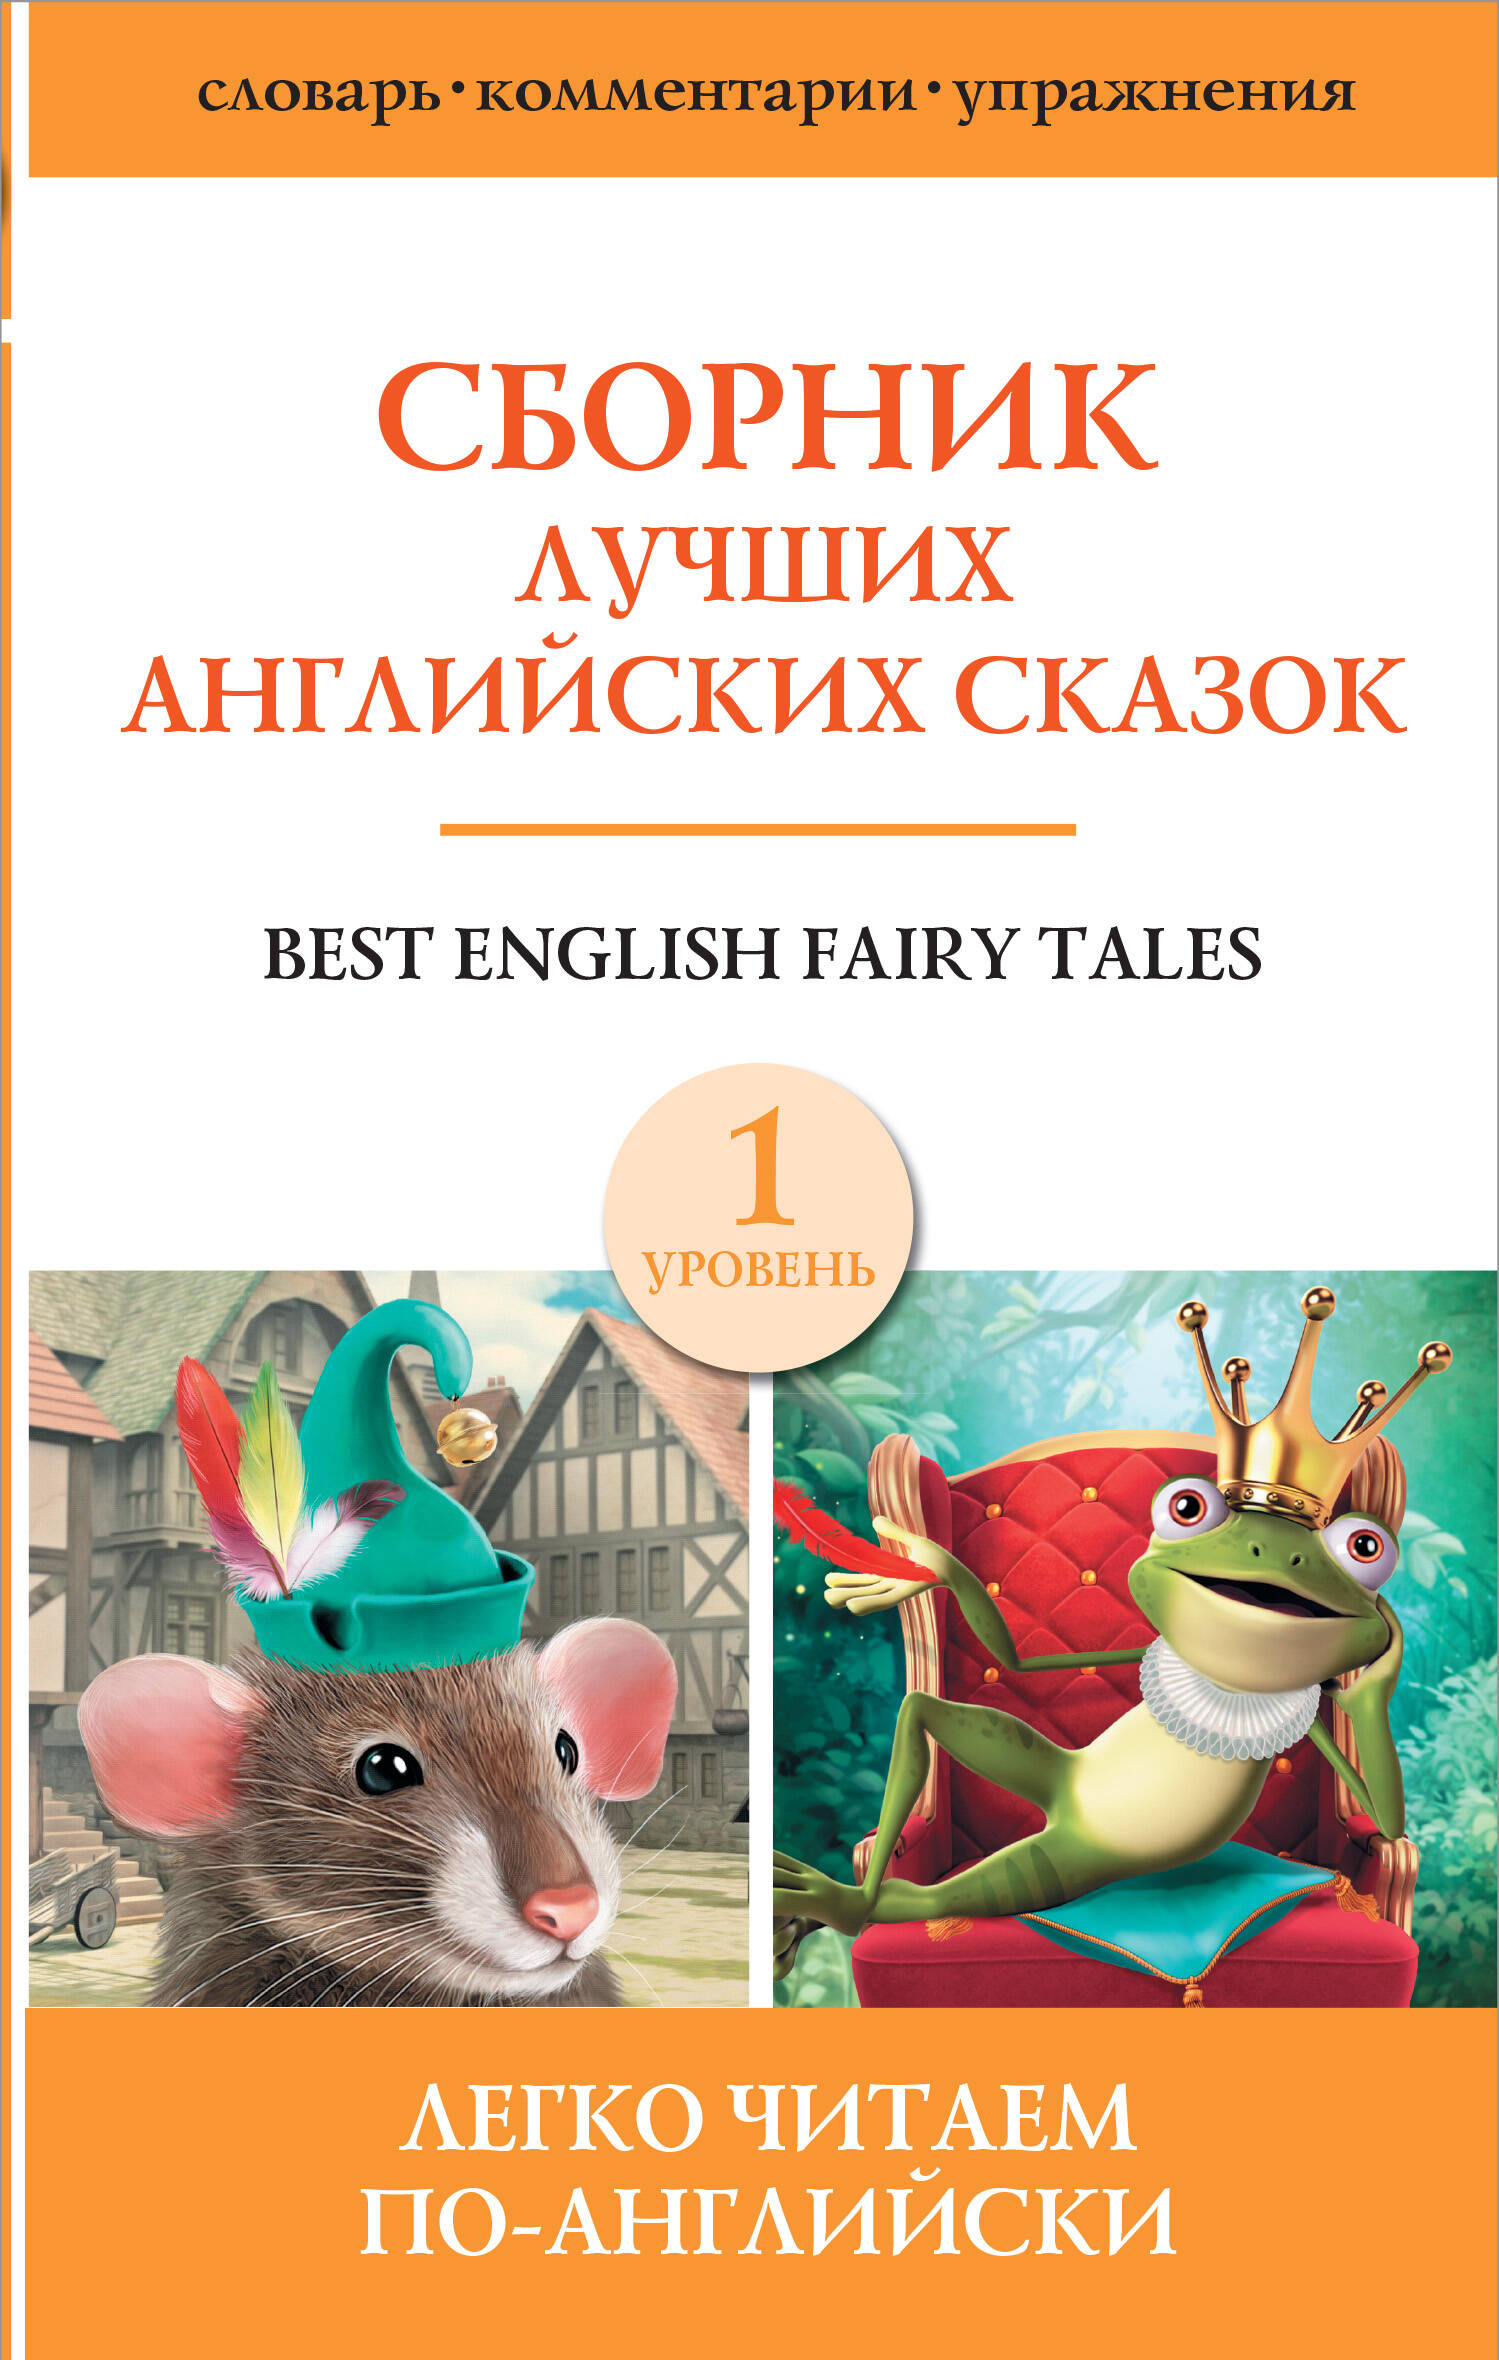 сборник самых известных английских легенд уровень 1 Best english fairy tales / Сборник лучших английских сказок. Уровень 1